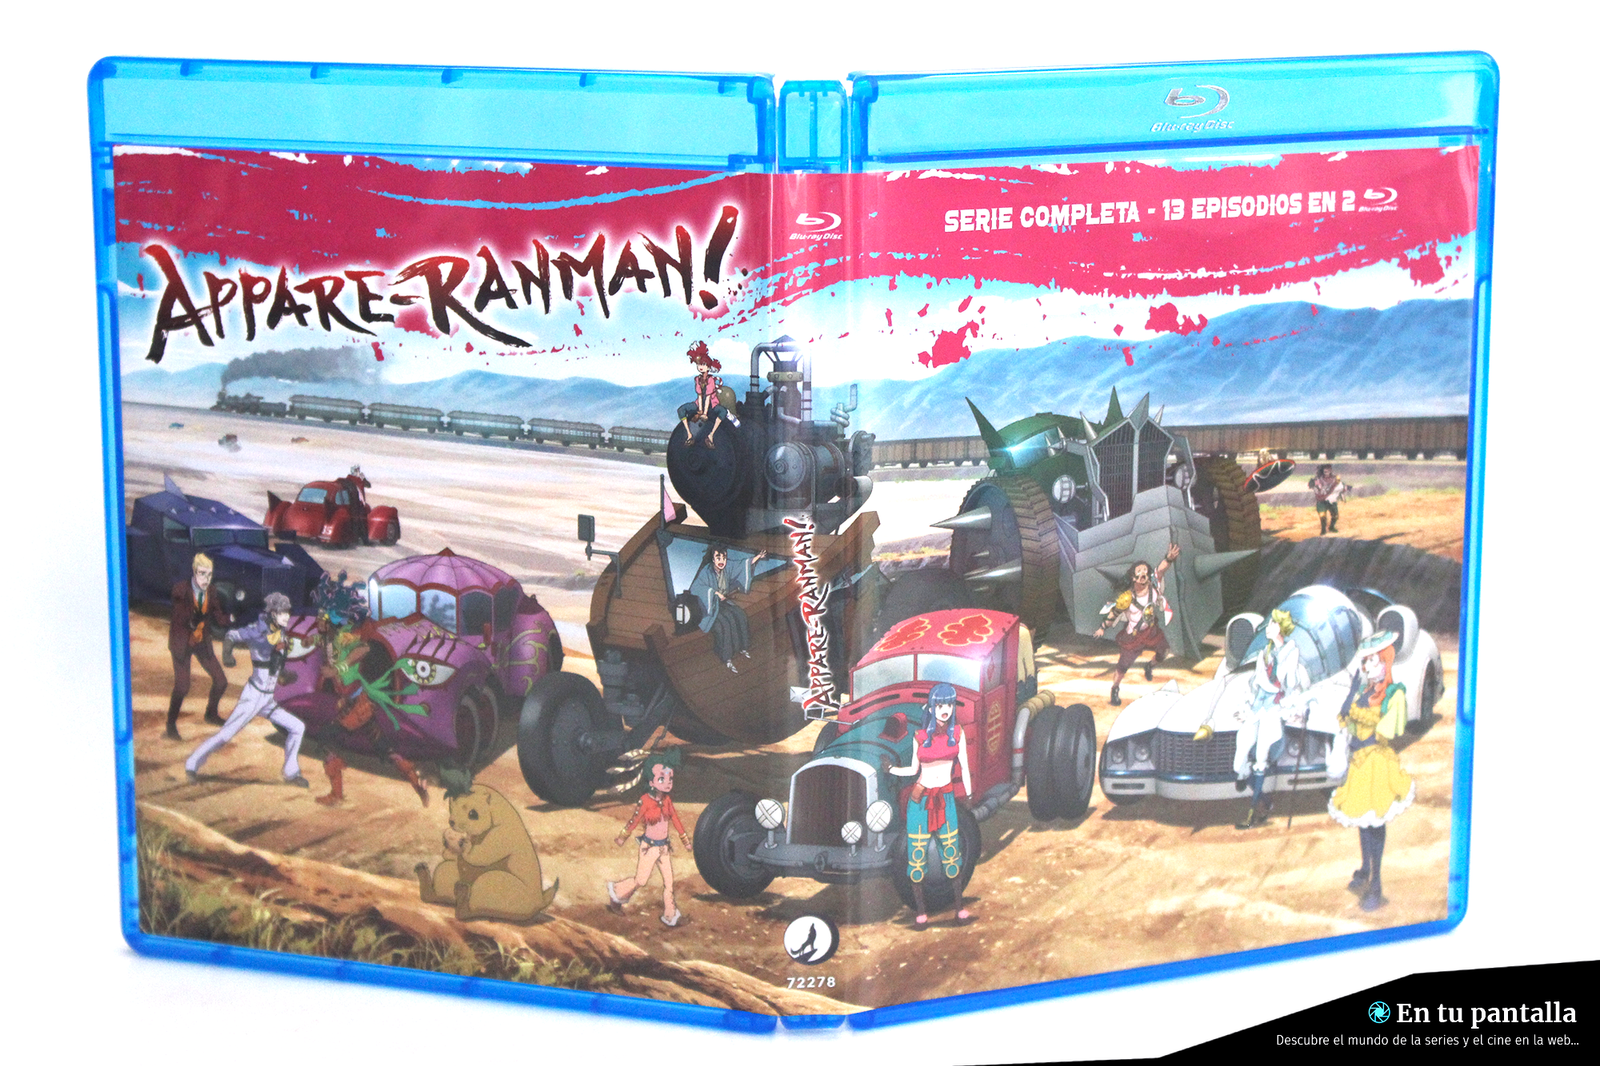 ‘Appare-Ranman!’: Un vistazo a la edición Blu-ray lanzada por Selecta Visión • En tu pantalla